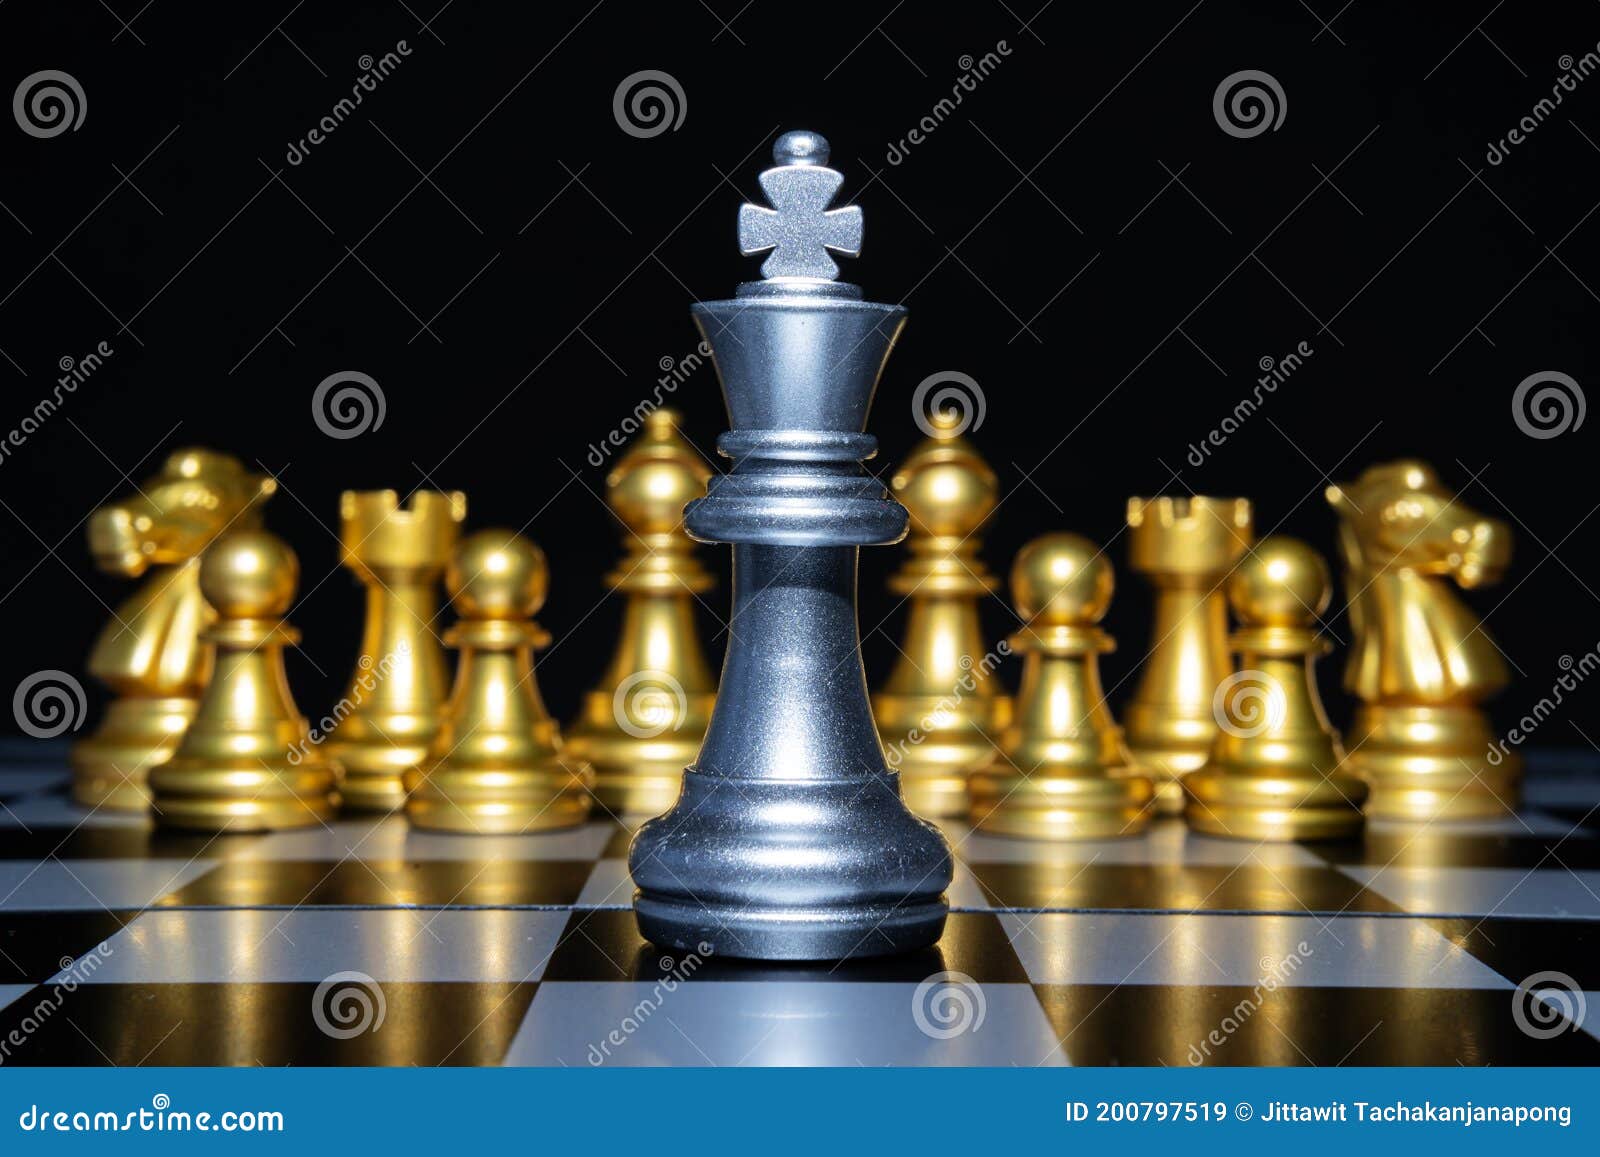 Posição do rei do ouro do jogo de xadrez e fundo de prata, conceito